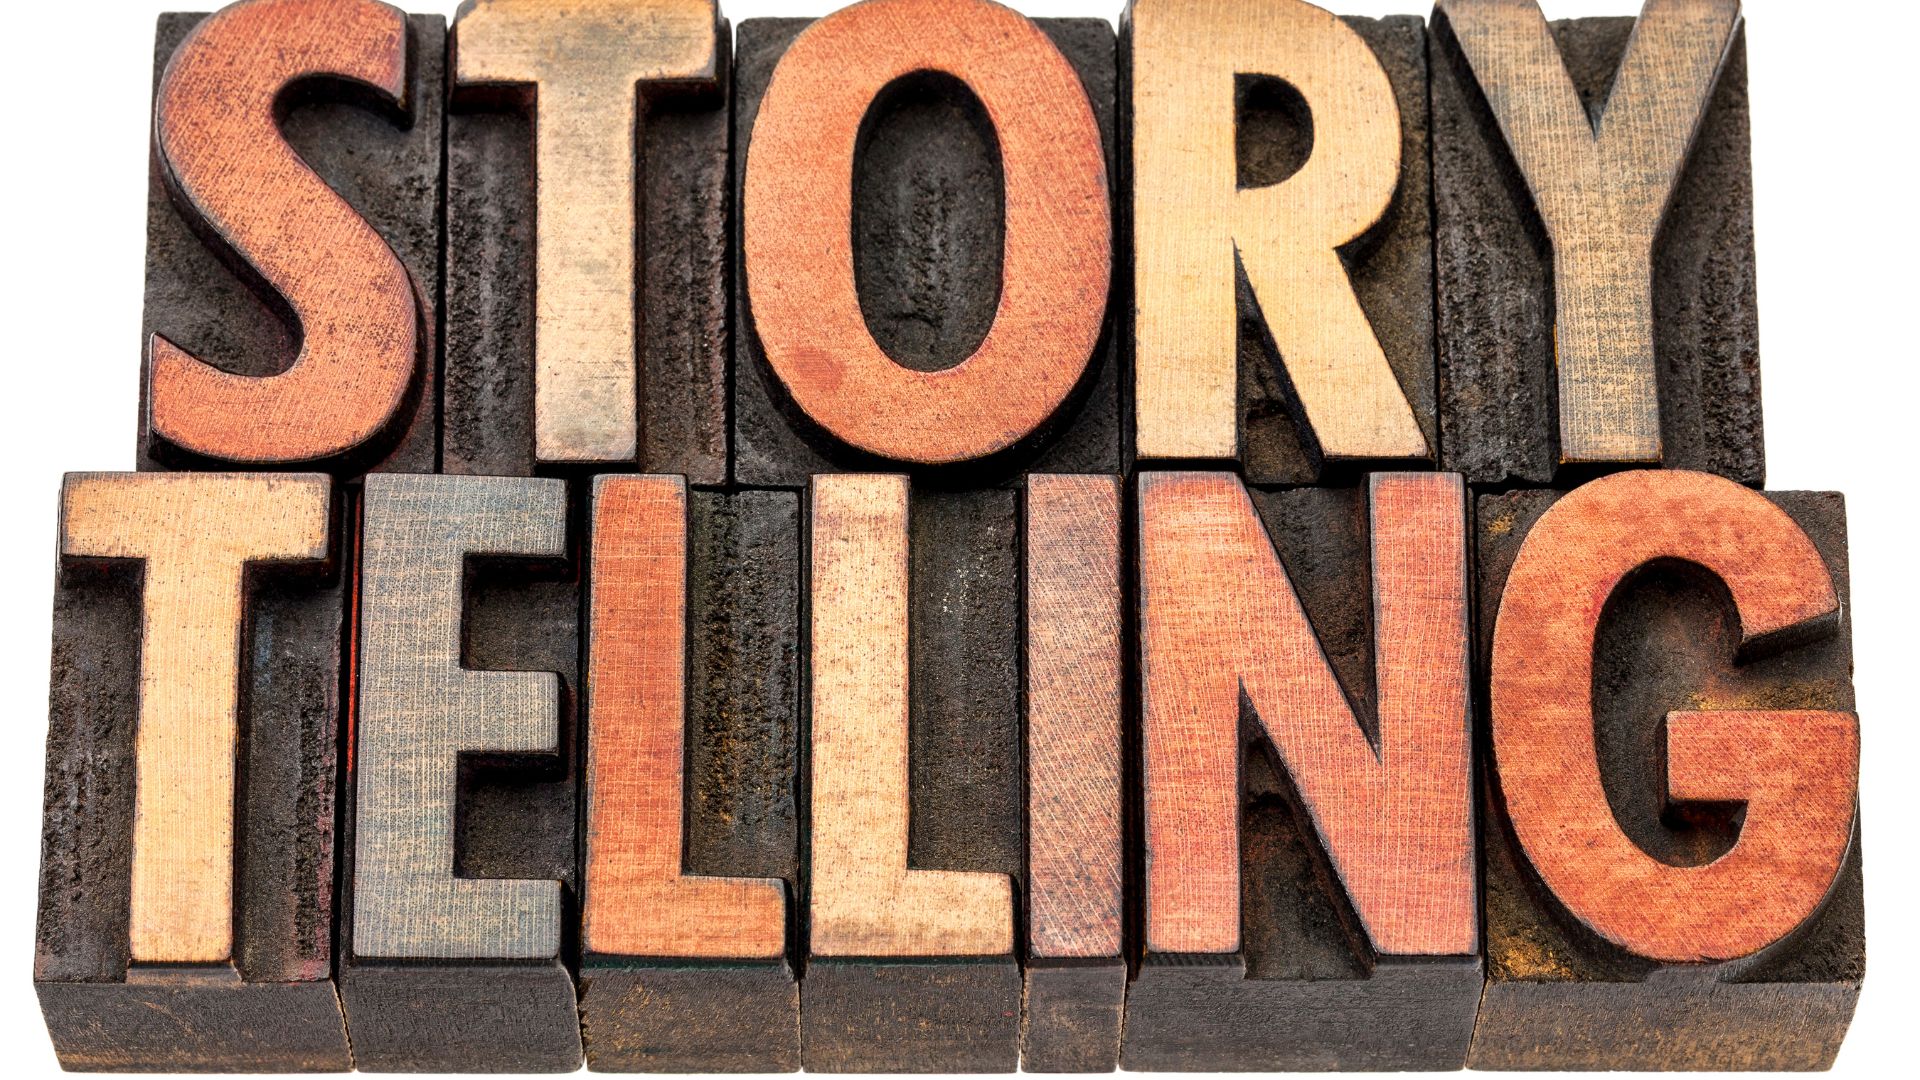 Comment utiliser le storytelling pour donner vie à votre marque et développer votre entreprise ?